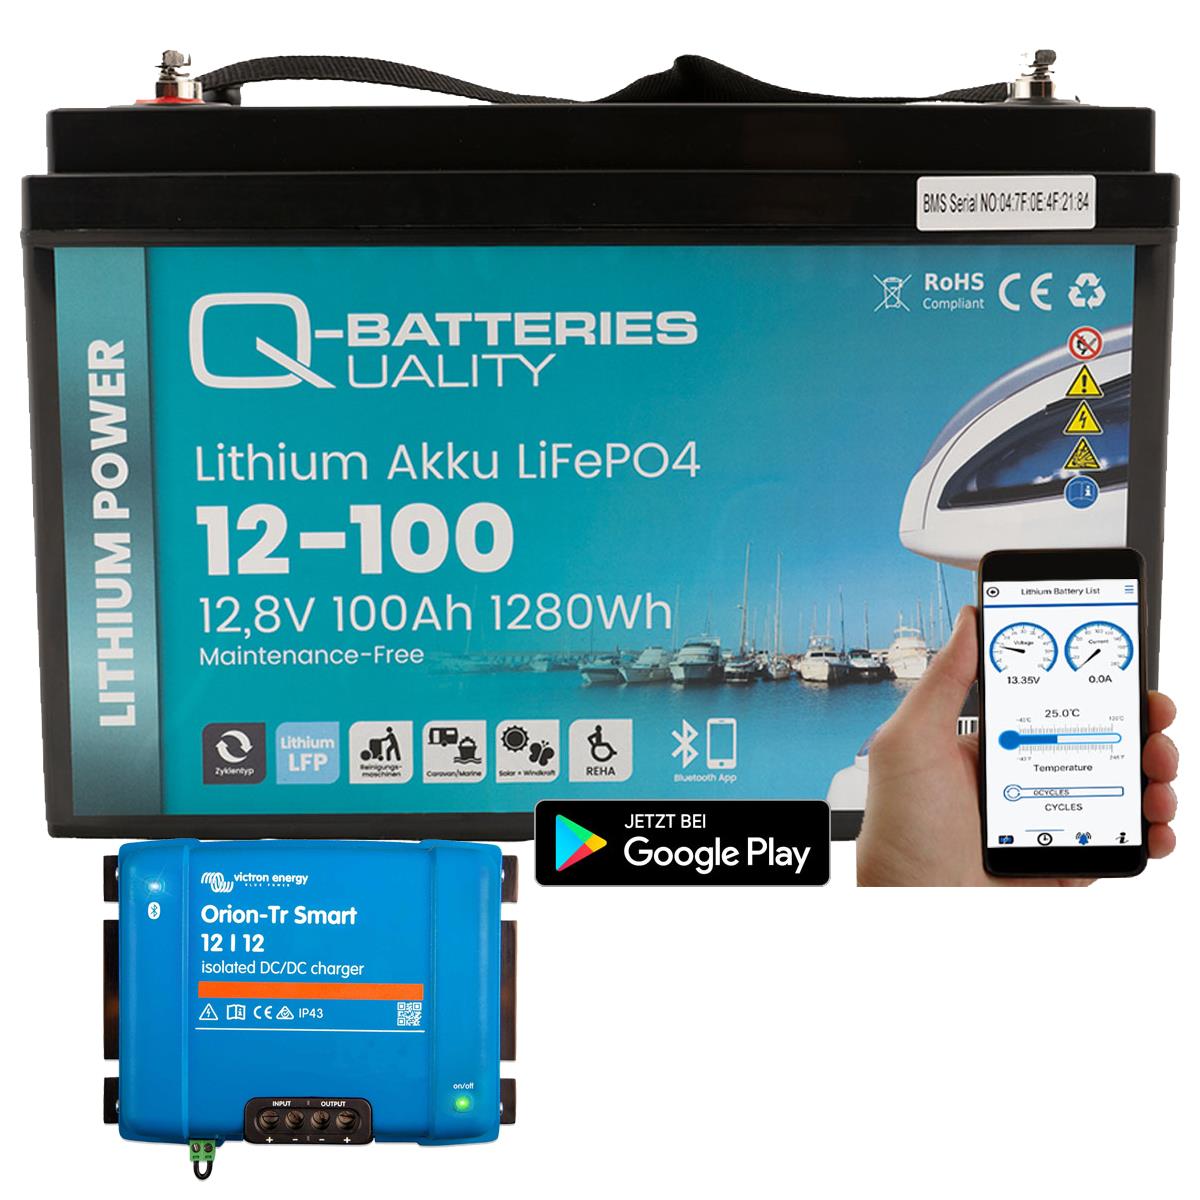 Q-Batteries Lithium Akku 12-100 12,8V 100Ah 1280Wh LiFePO4 Batterie mit Victron Orion Ladegerät